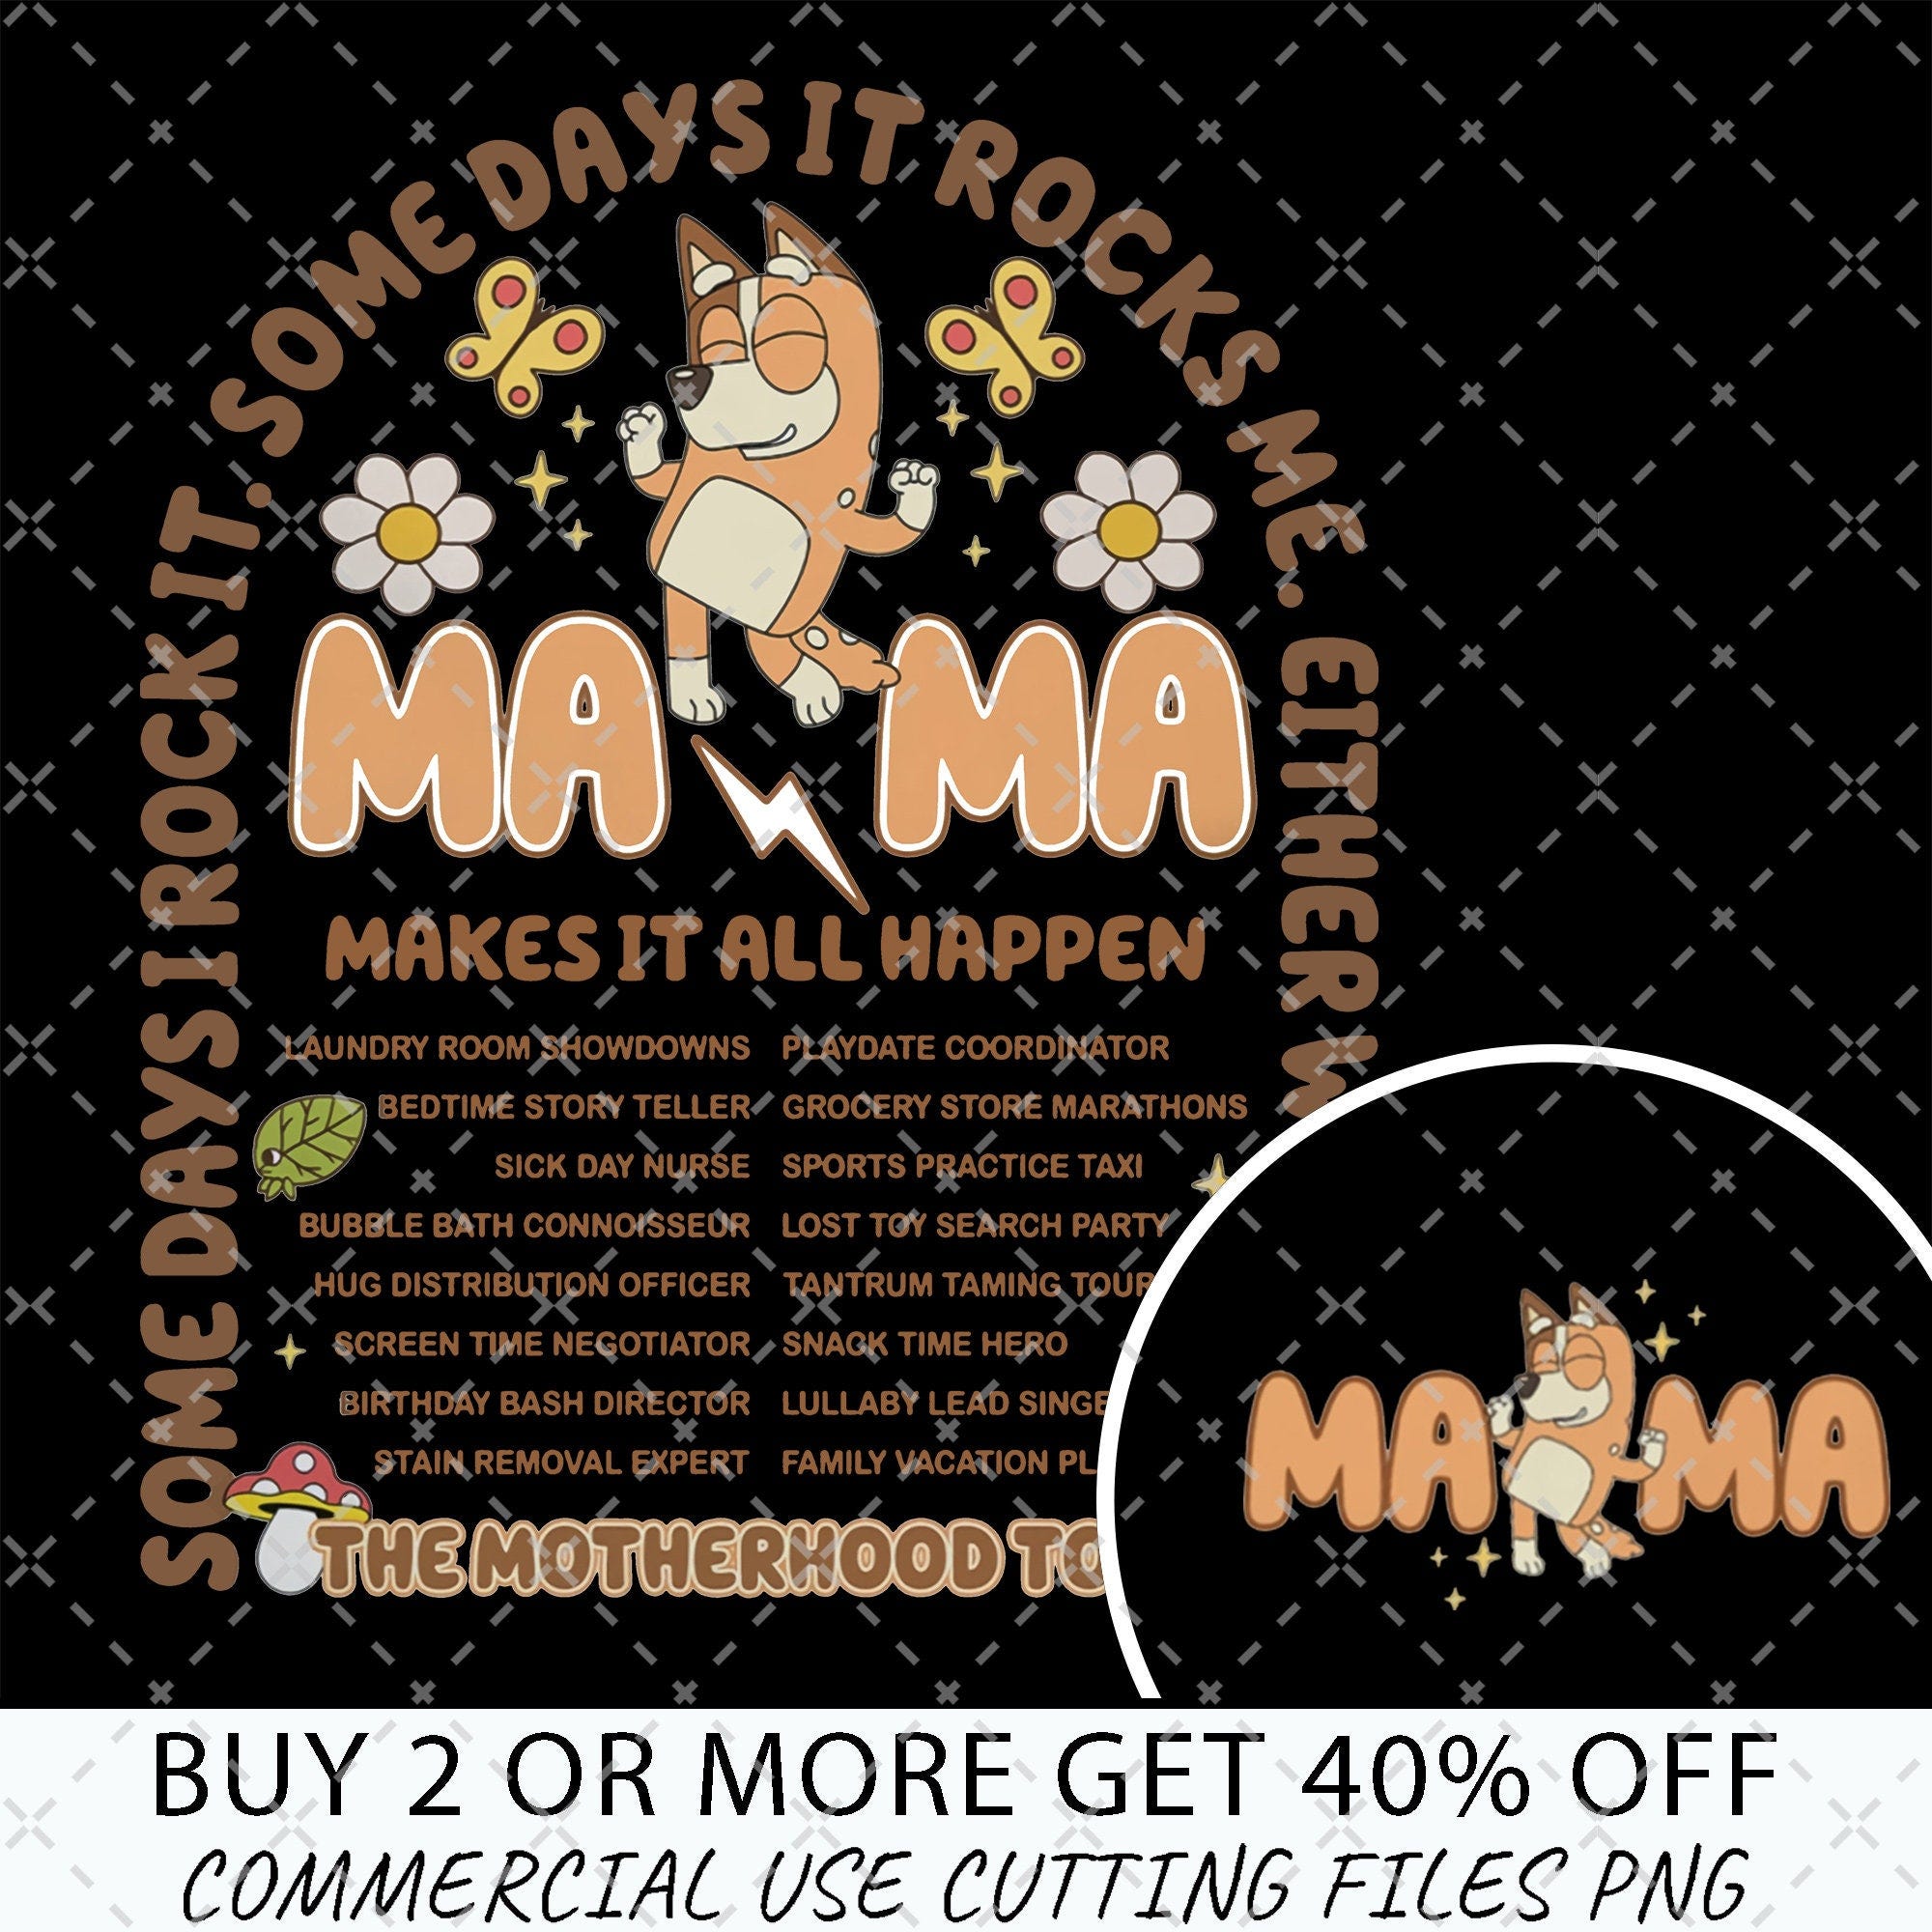 Bluey Chili Mama Digital File, Bluey Mama Rock Tour Merch, Bluey The Motherhood Tour, Bluey Mother